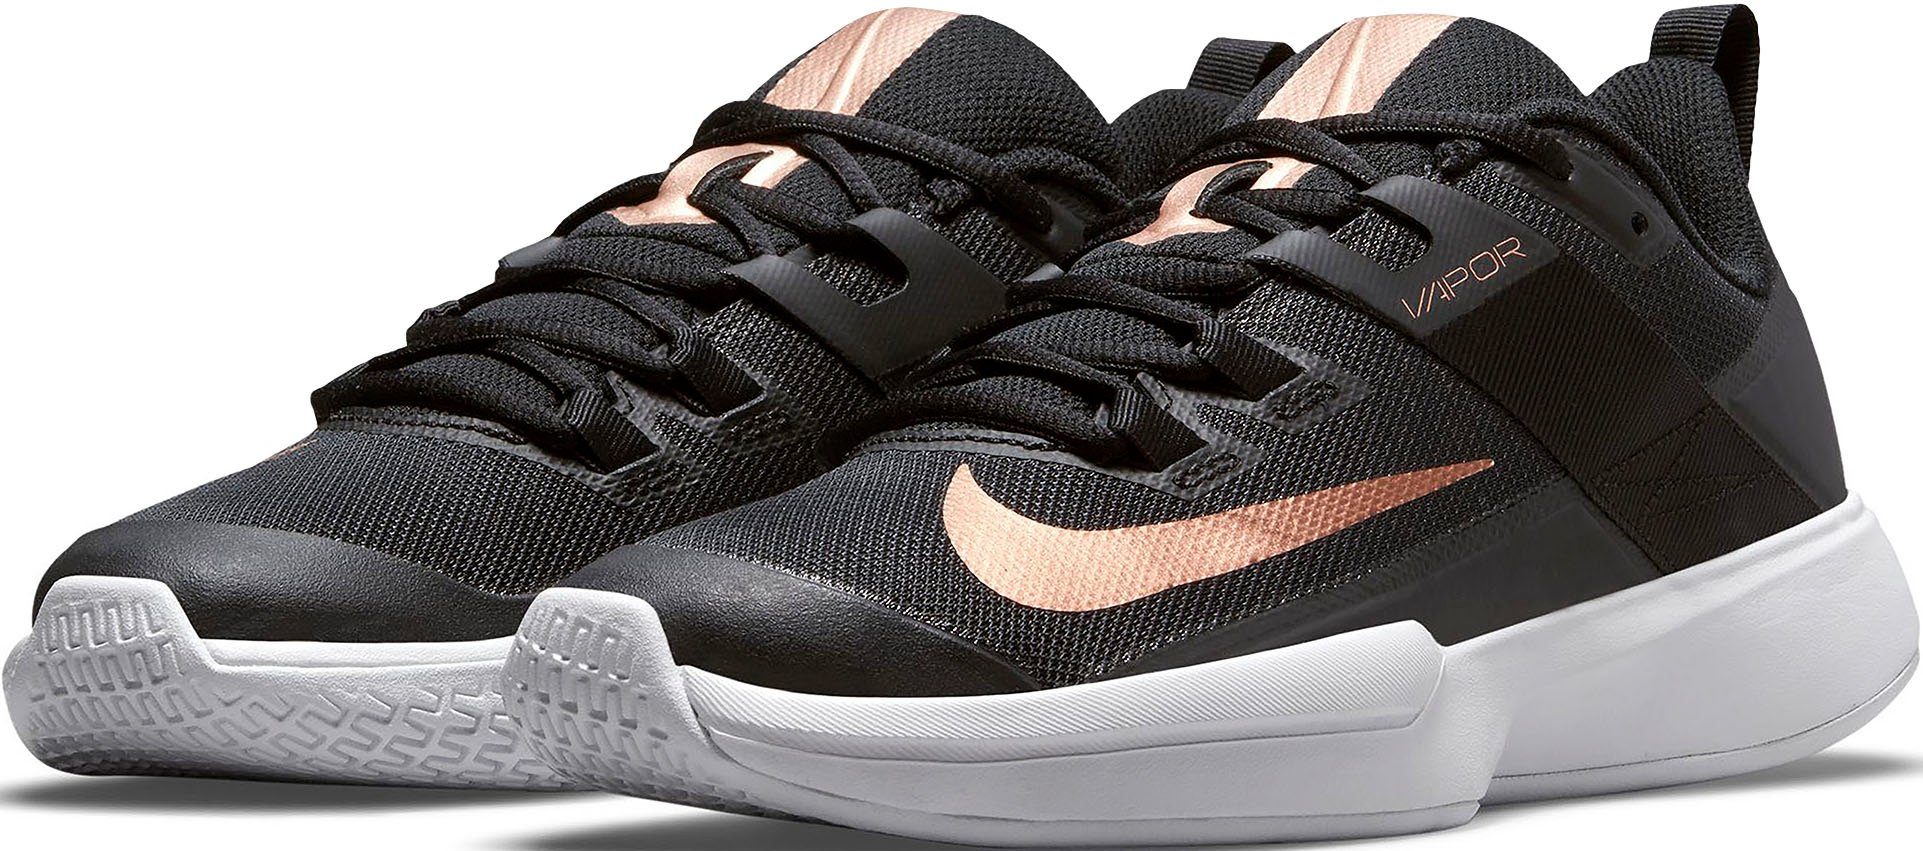 Nike »NikeCourt Vapor Lite« Tennisschuh online kaufen | OTTO